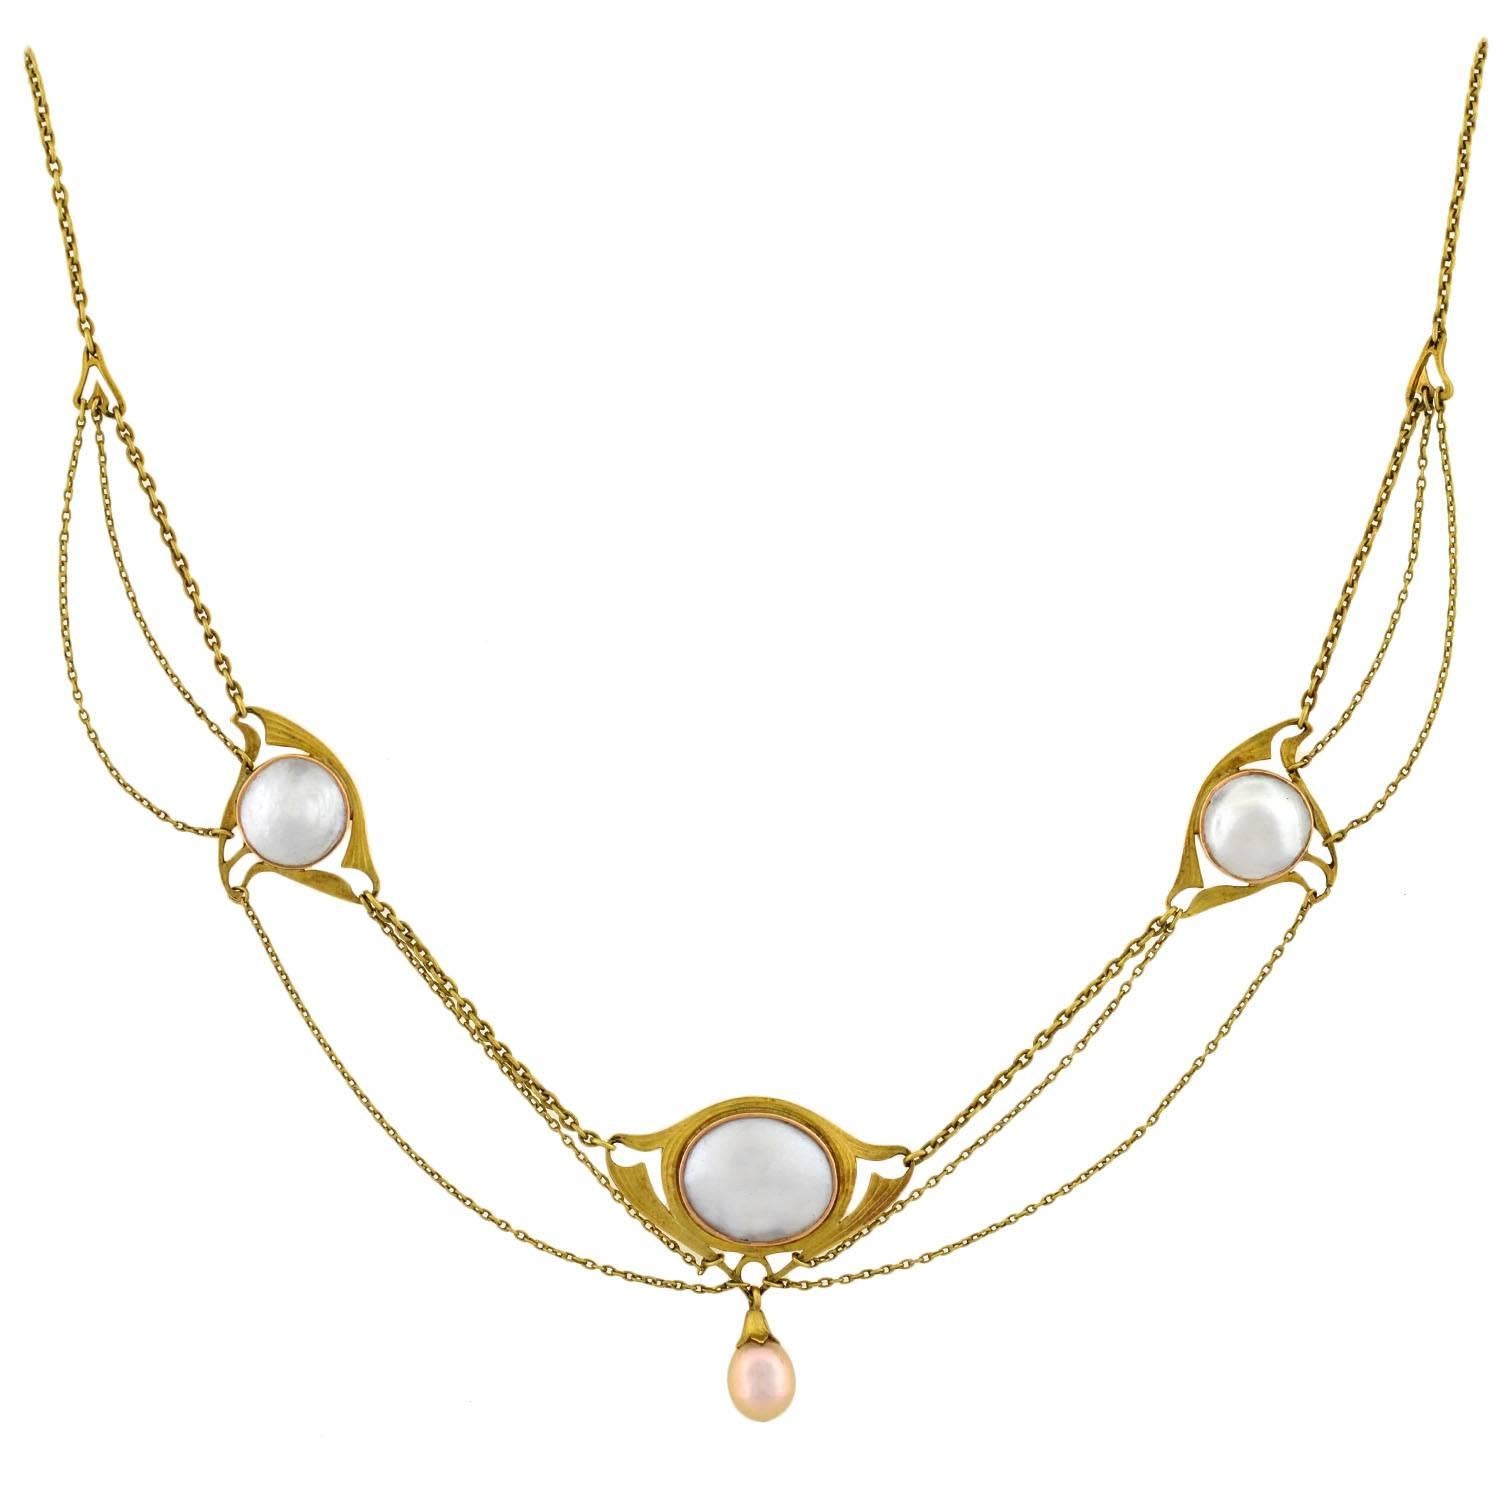 Art Nouveau Blister Pearl Festoon Gold Necklace